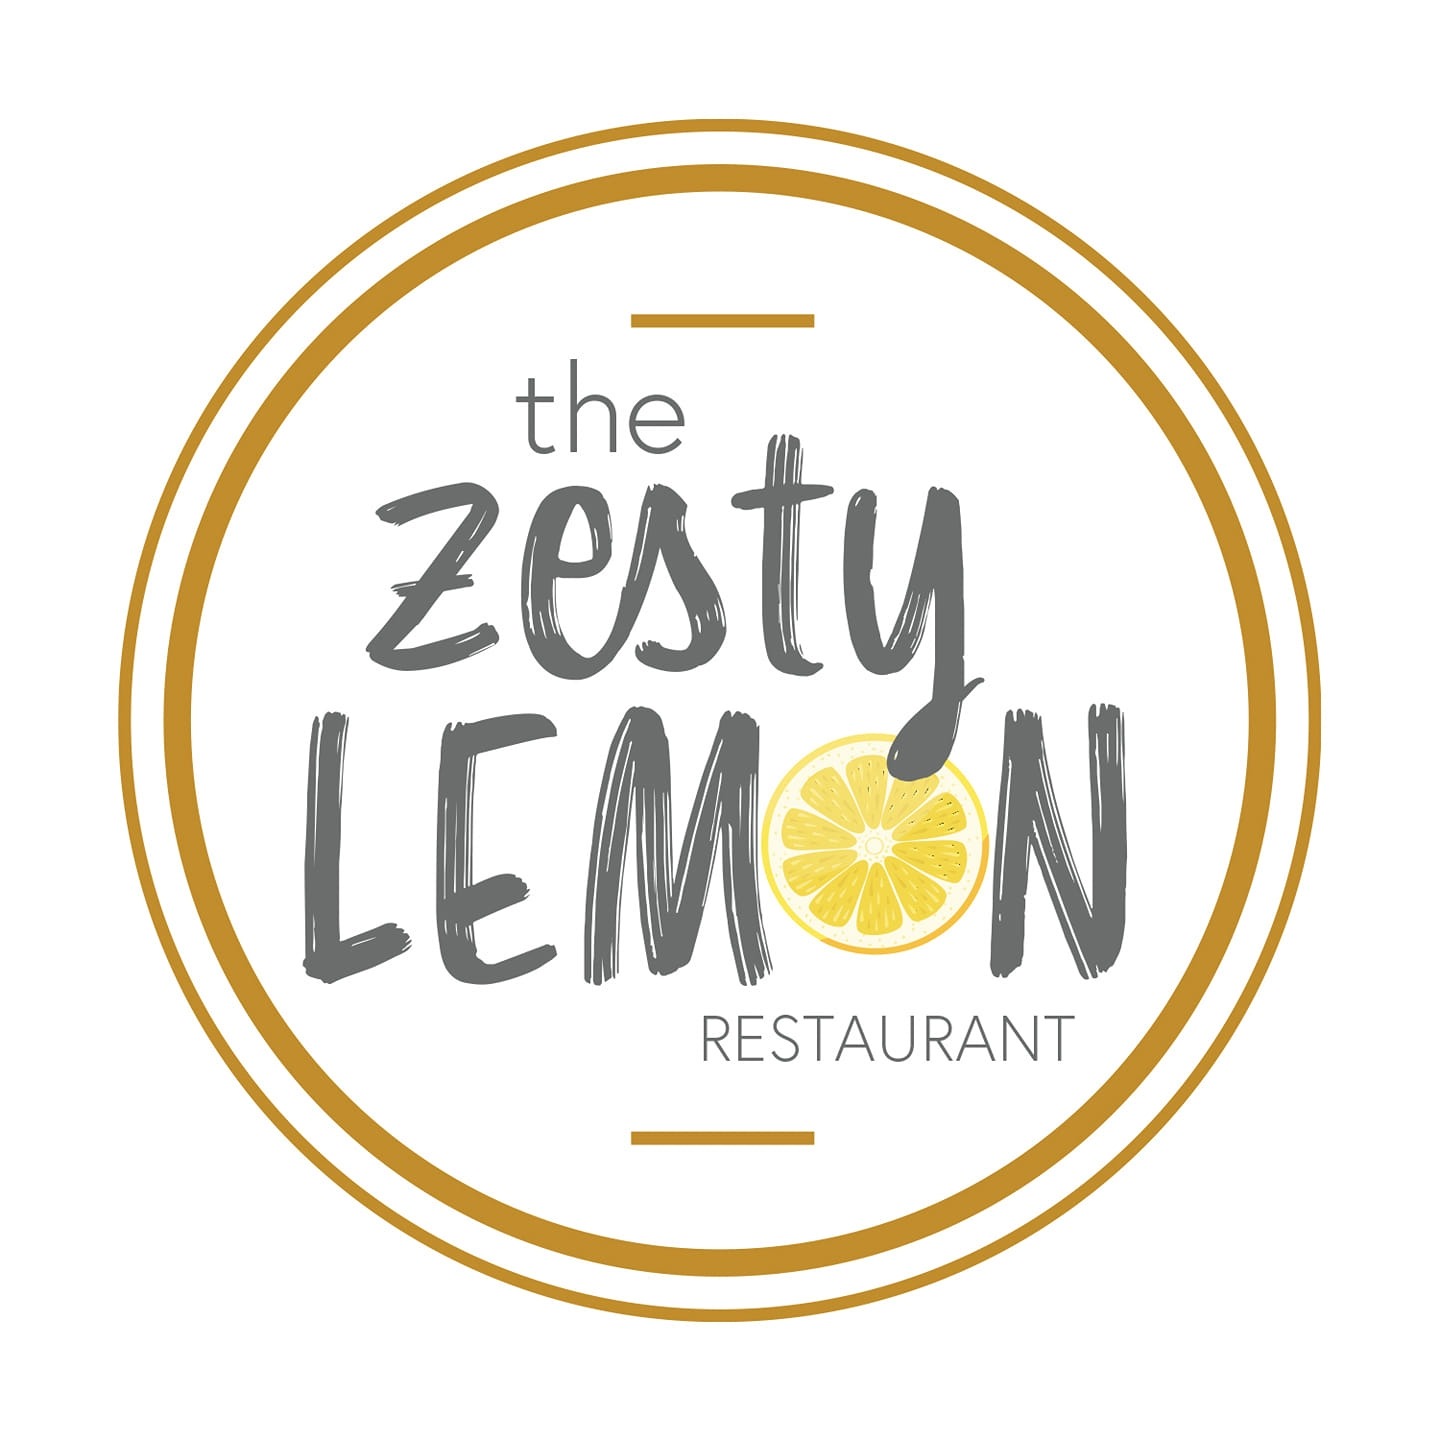 The Zesty Lemon Restaurant